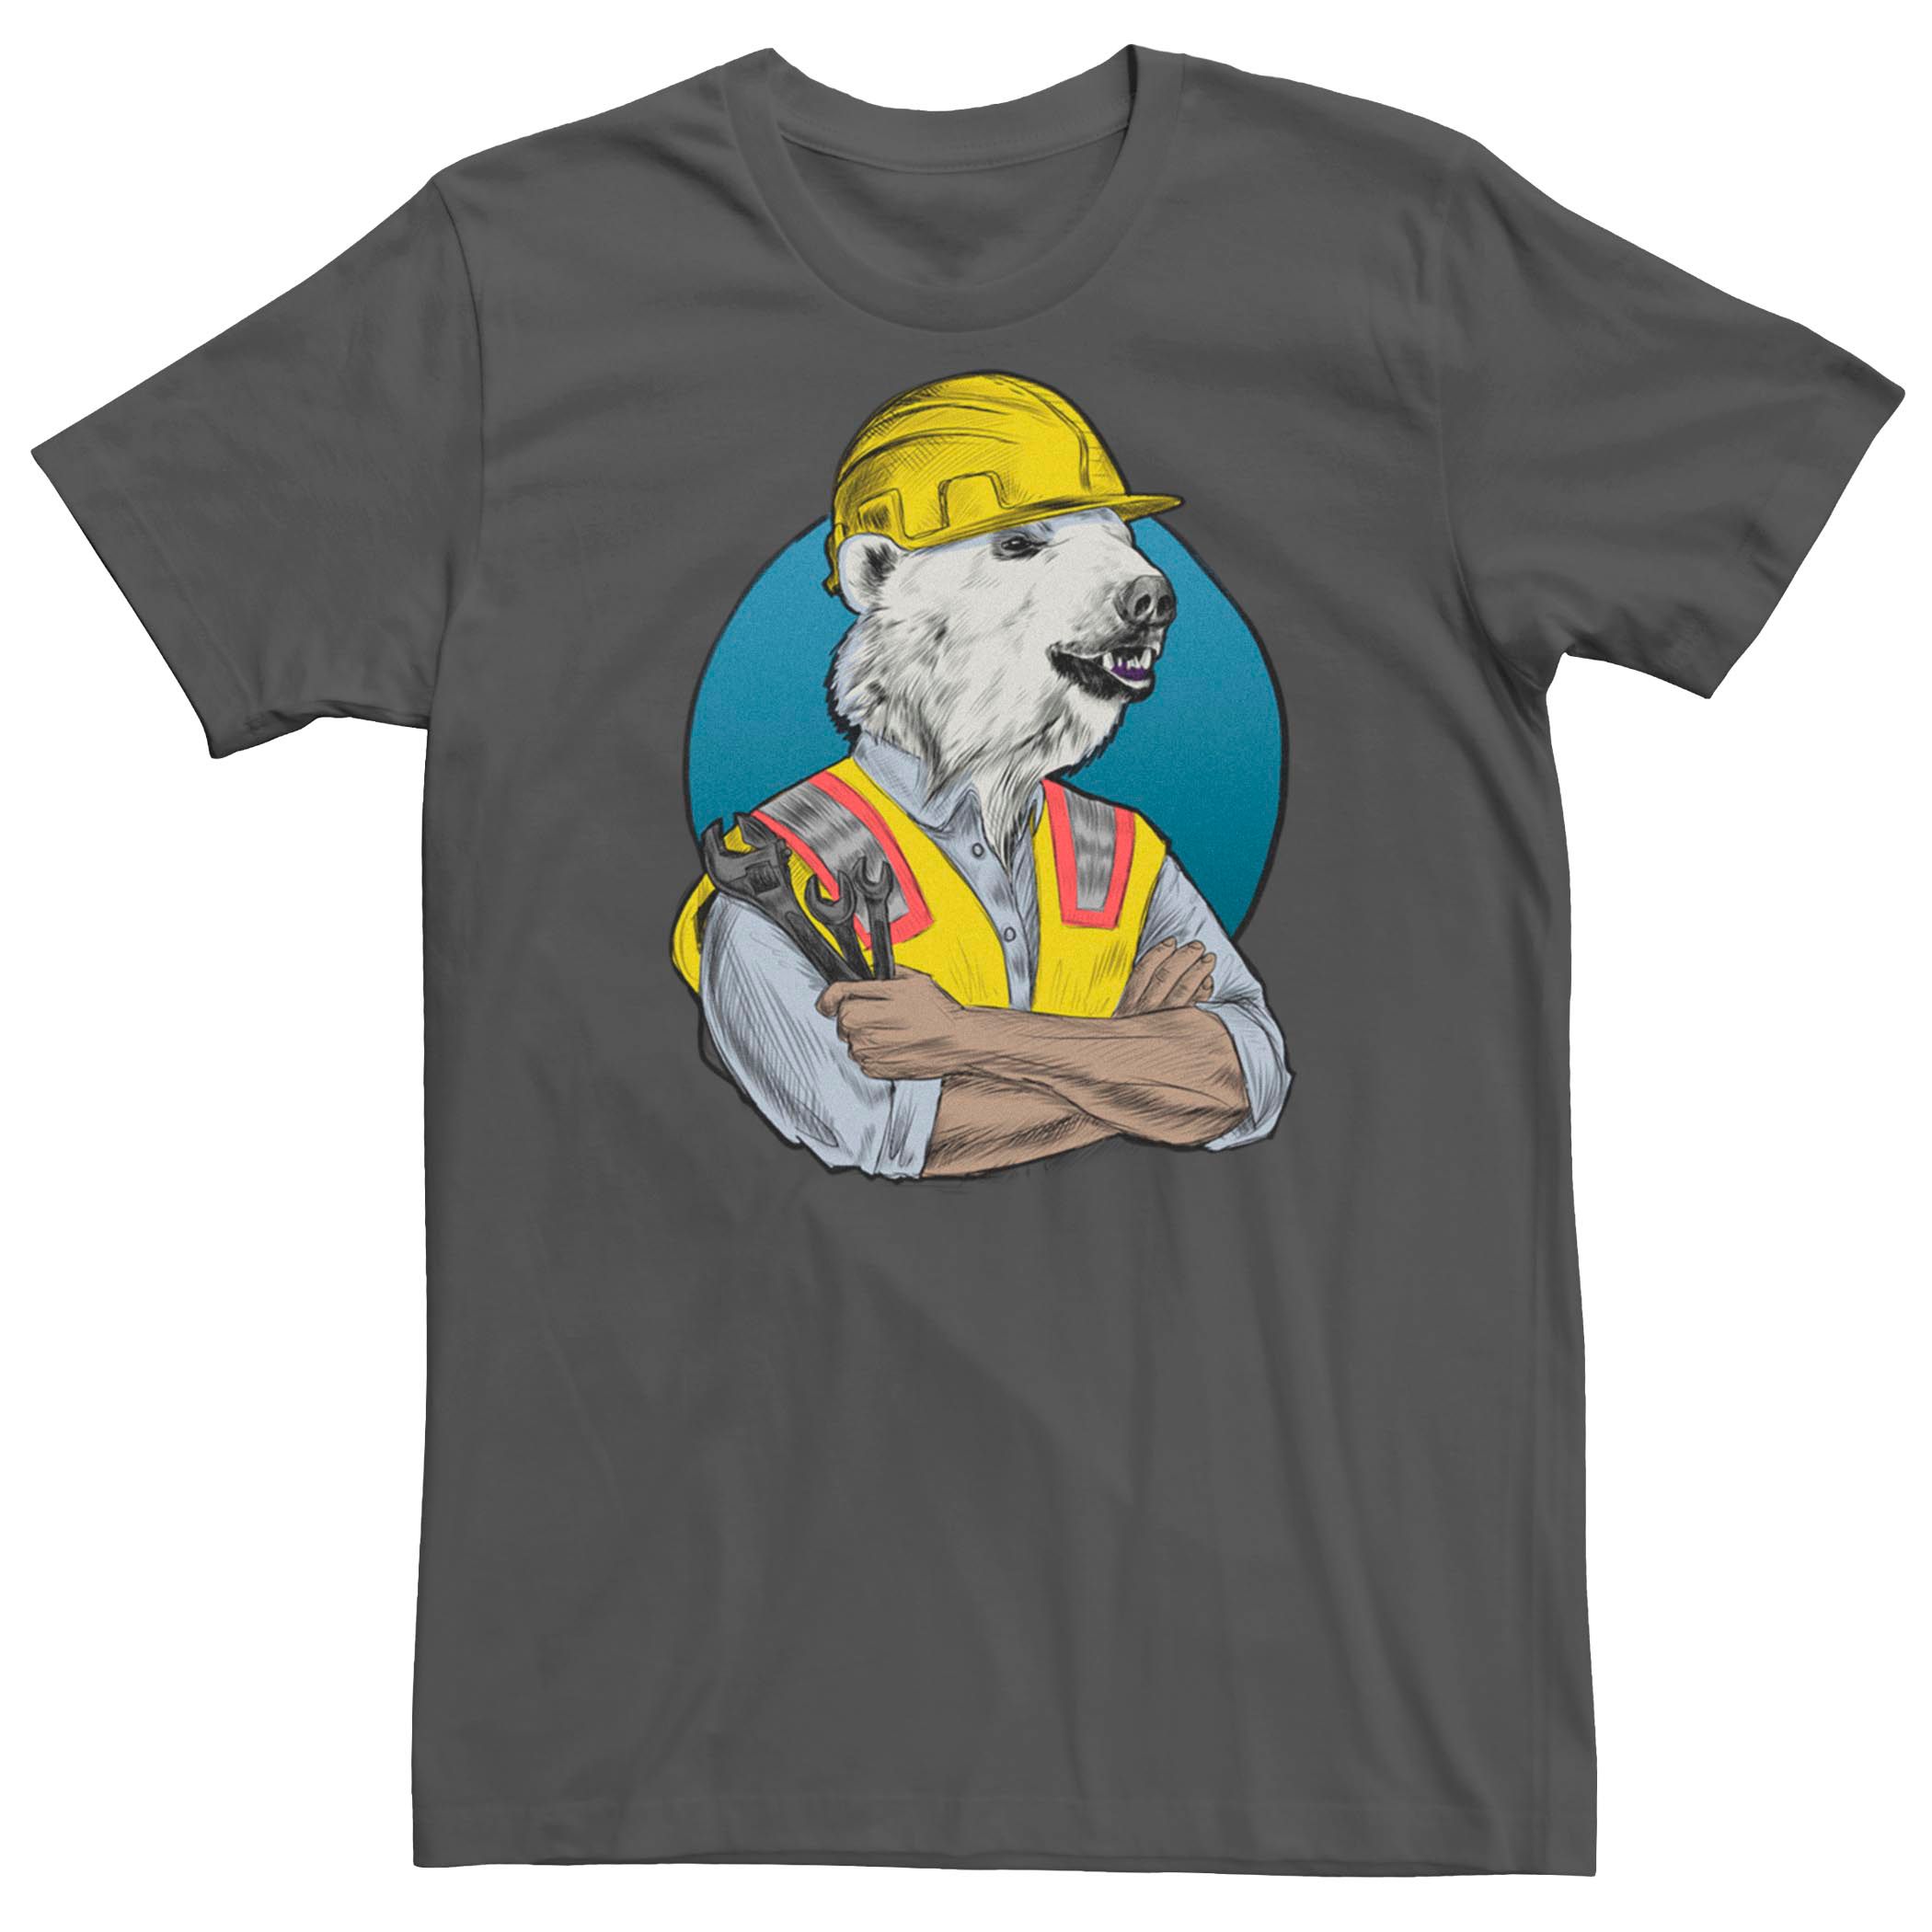 Мужская футболка с рисунком строителя Fifth Sun